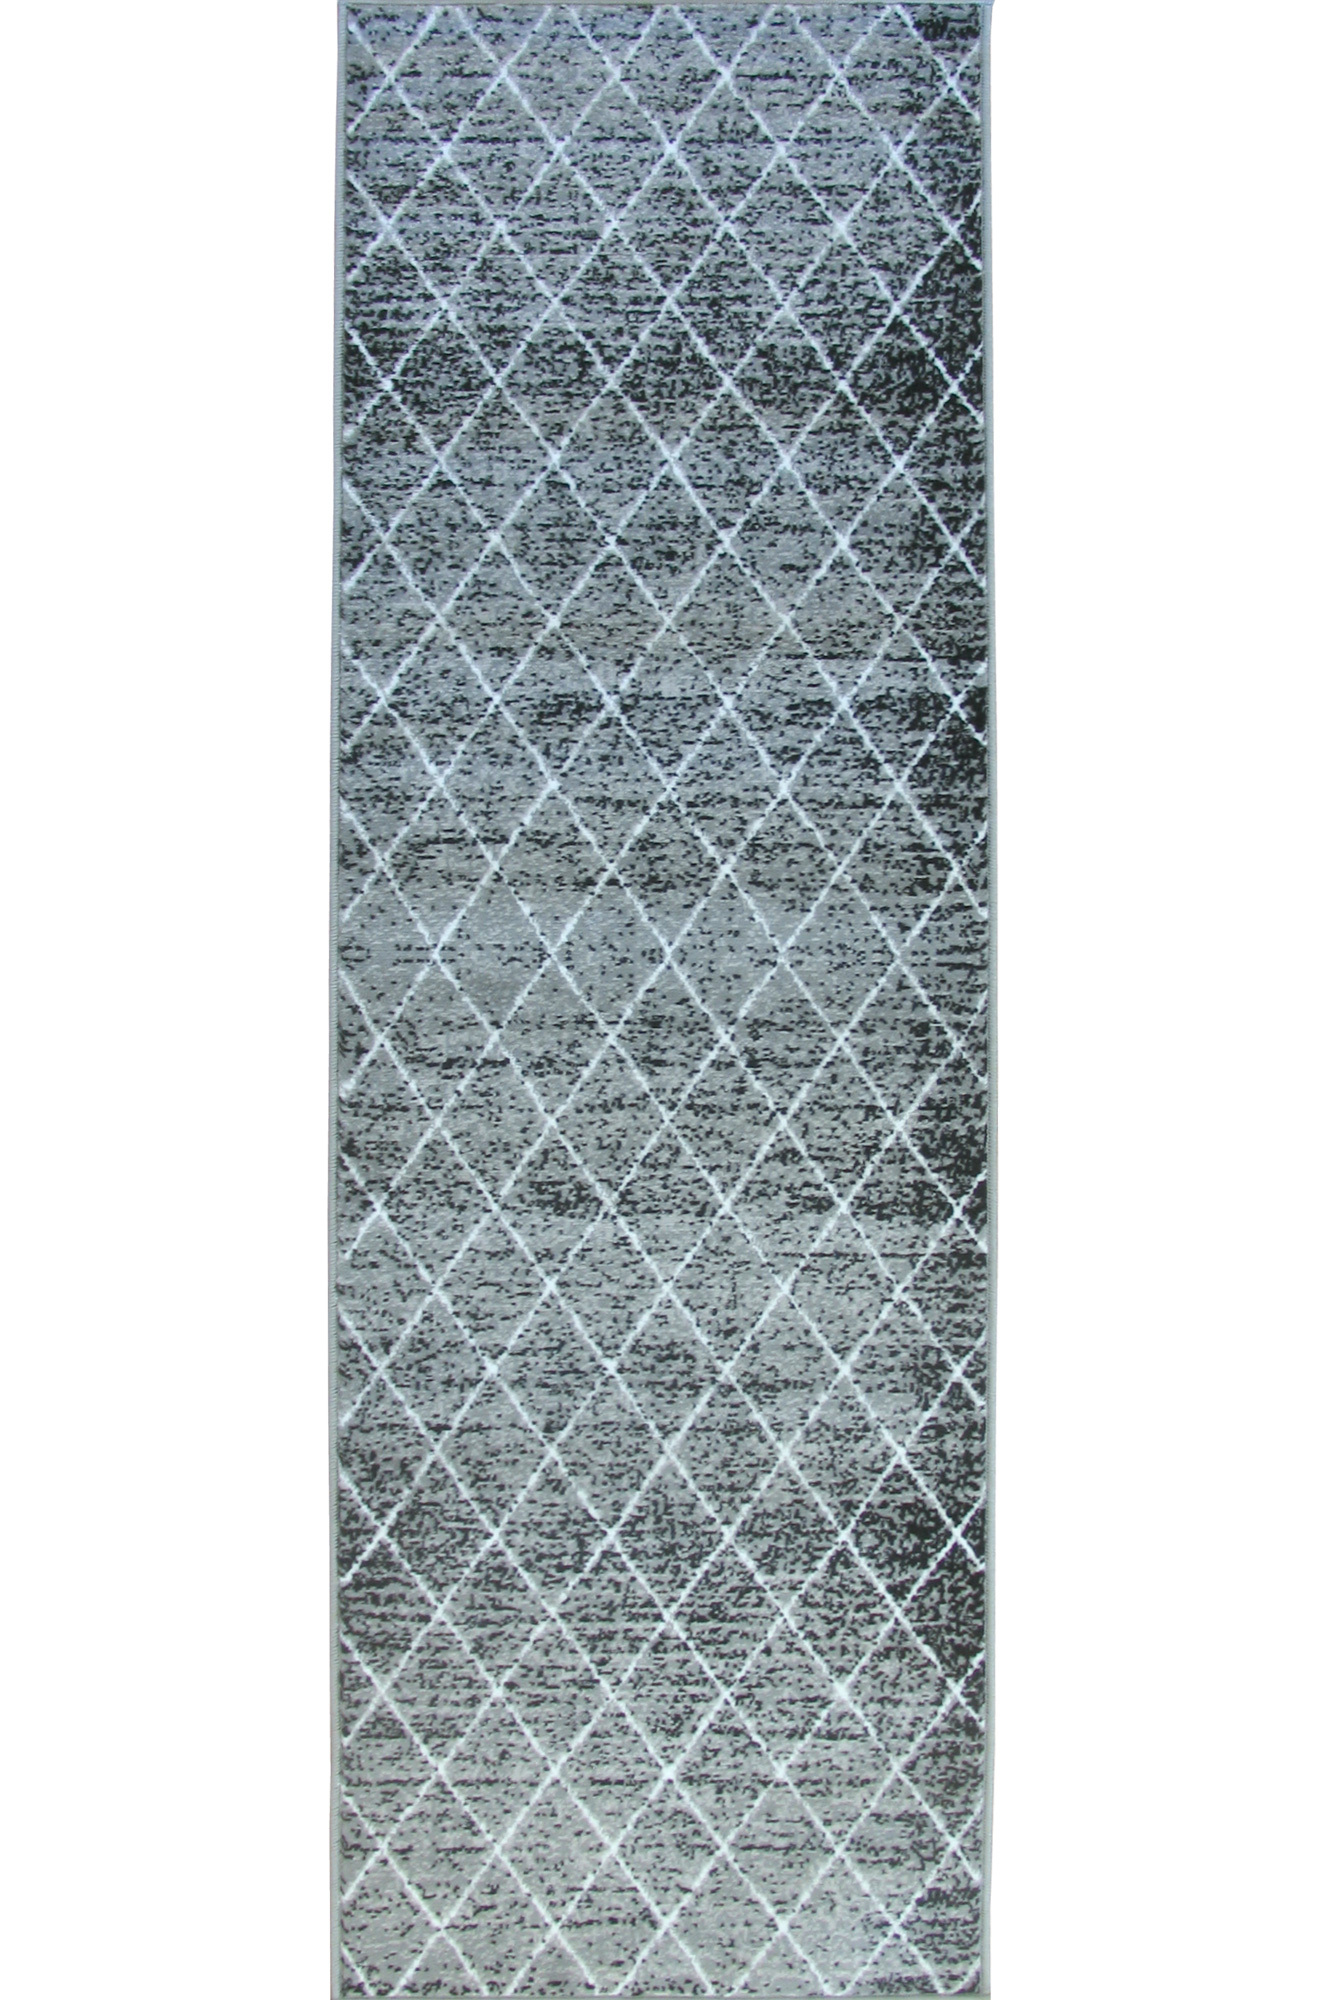 Atlanta Moroccan Grey Trellis Rug